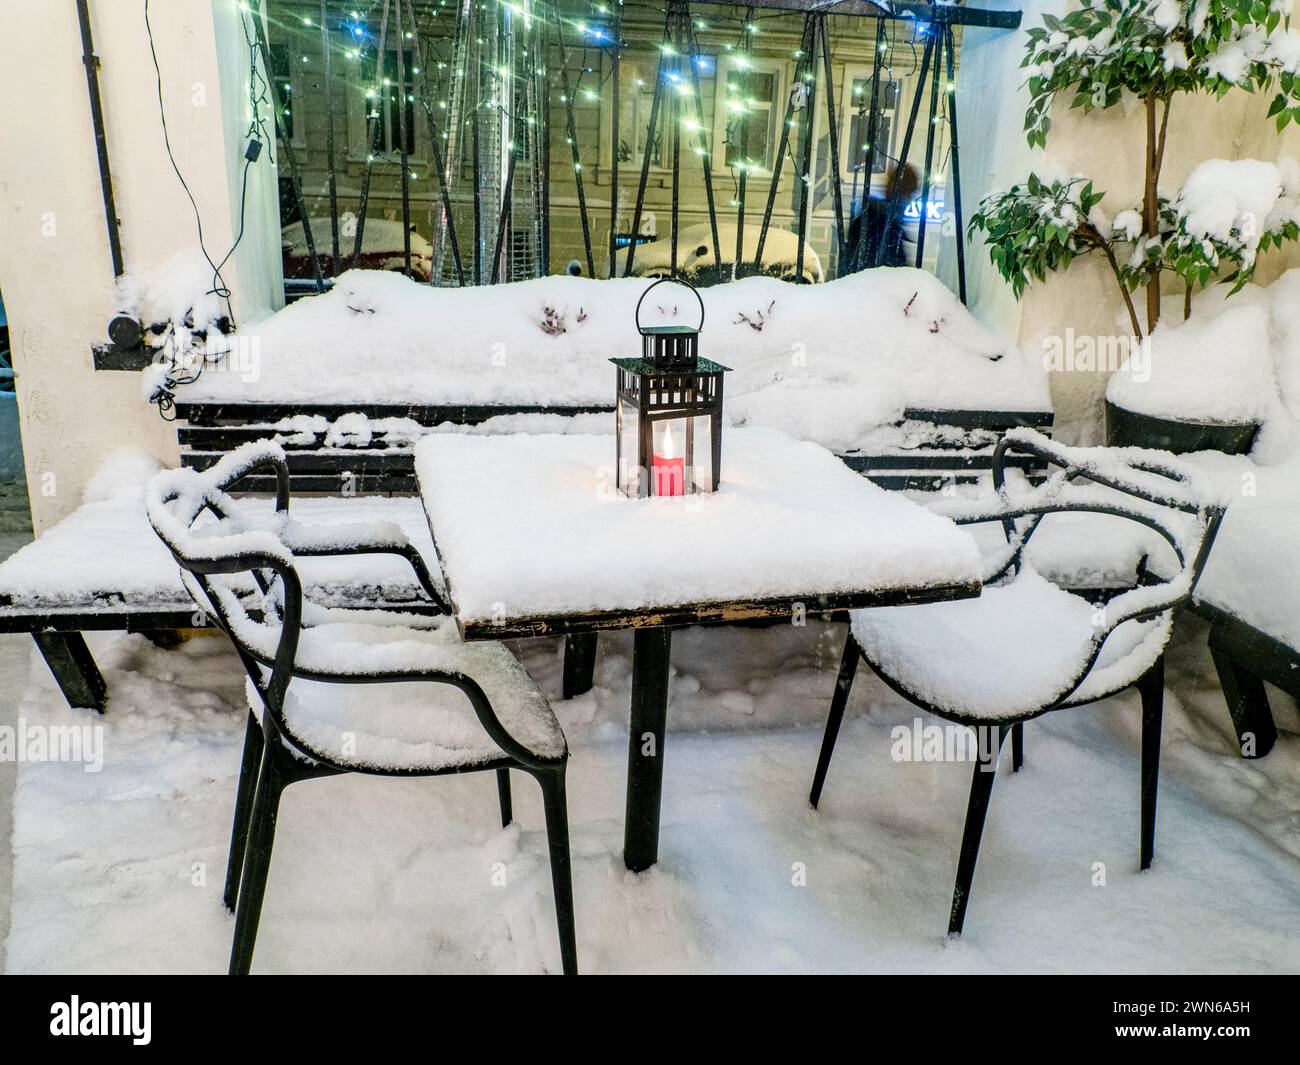 Tables et chaises recouvertes de neige fraîche en hiver, bougie rouge allumée sur la table recouverte de neige fraîche Banque D'Images